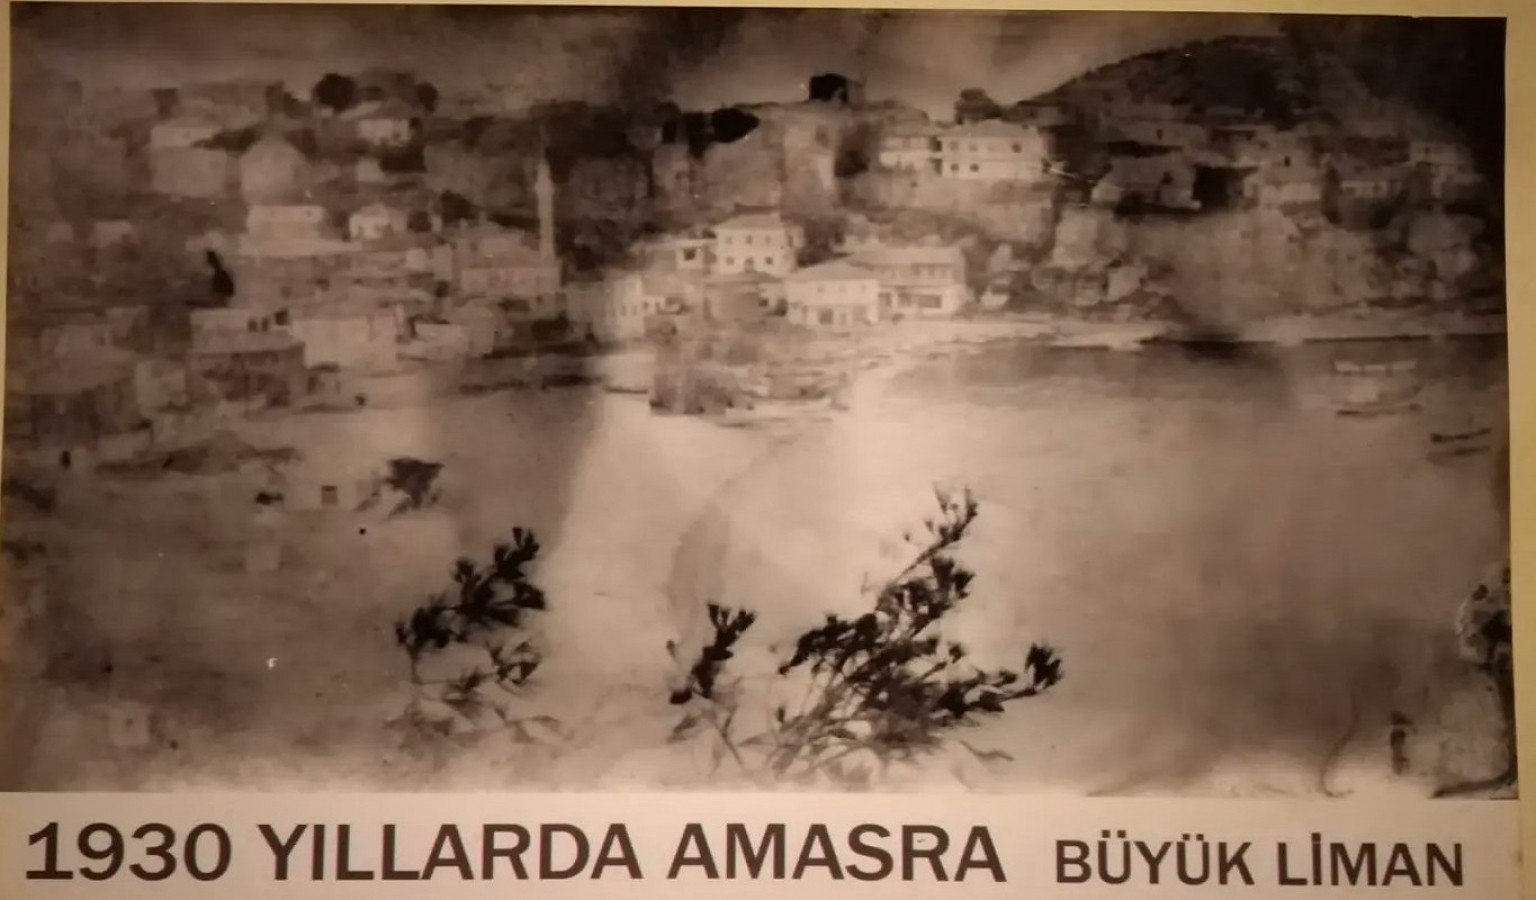 Eski Amasra fotoğraflarından albüm yapılacak